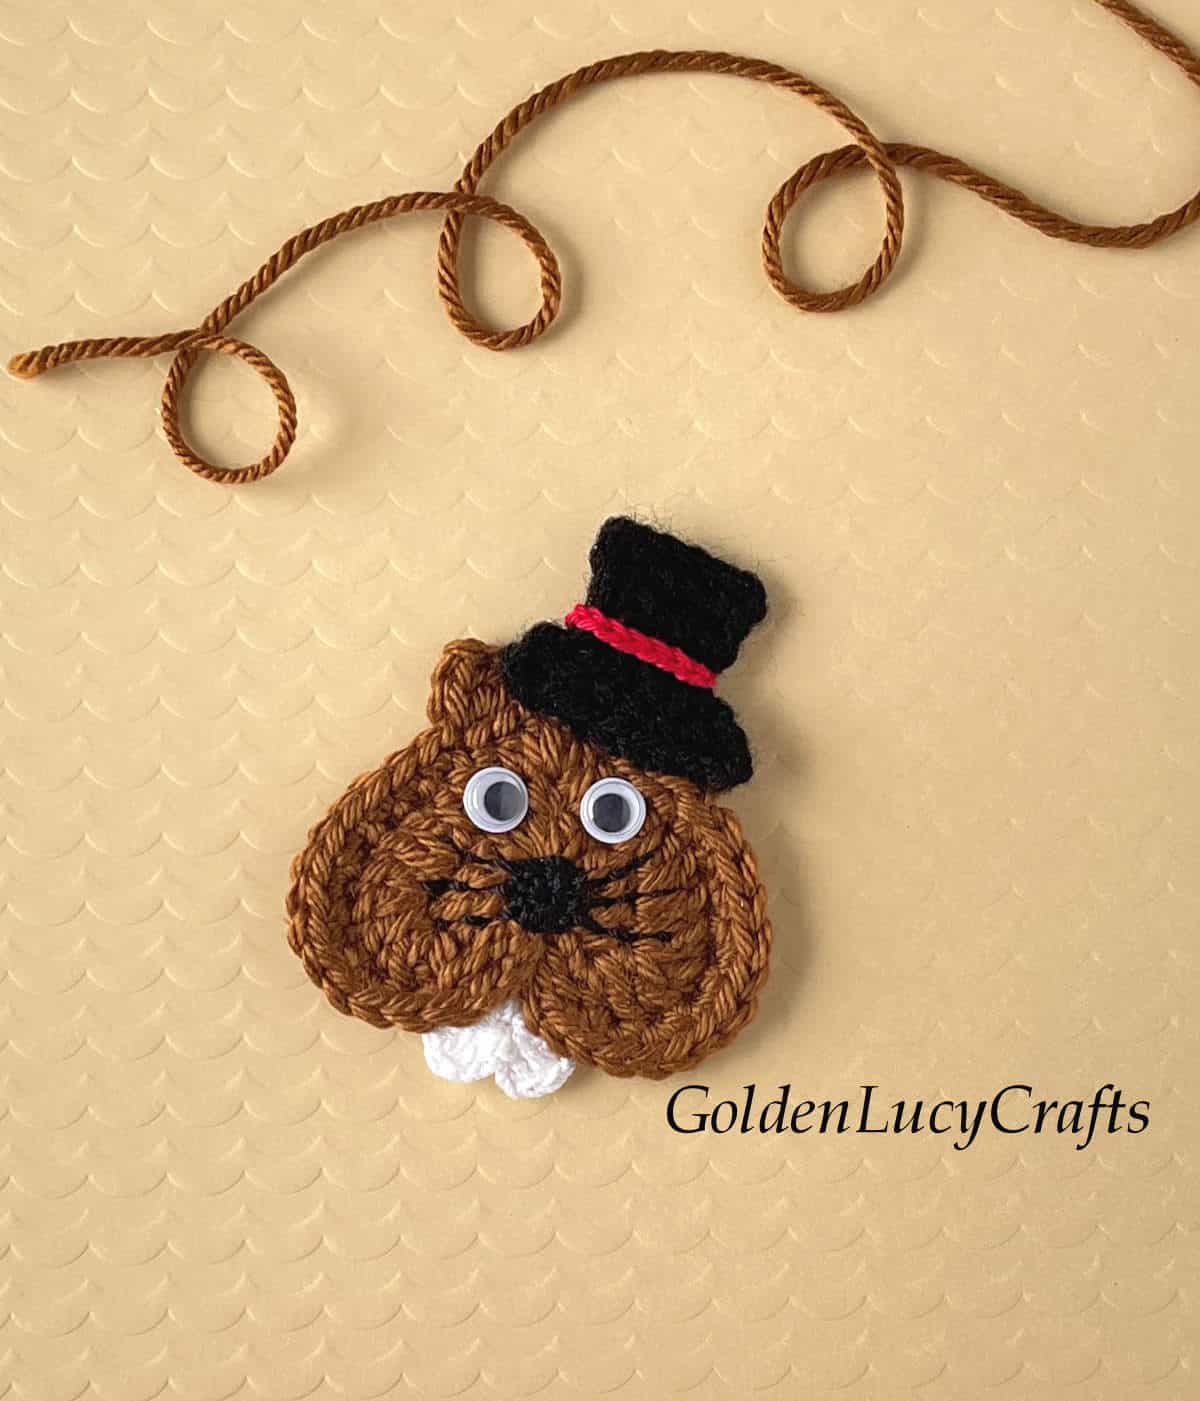 Crochet heart groundhog in a top hat.